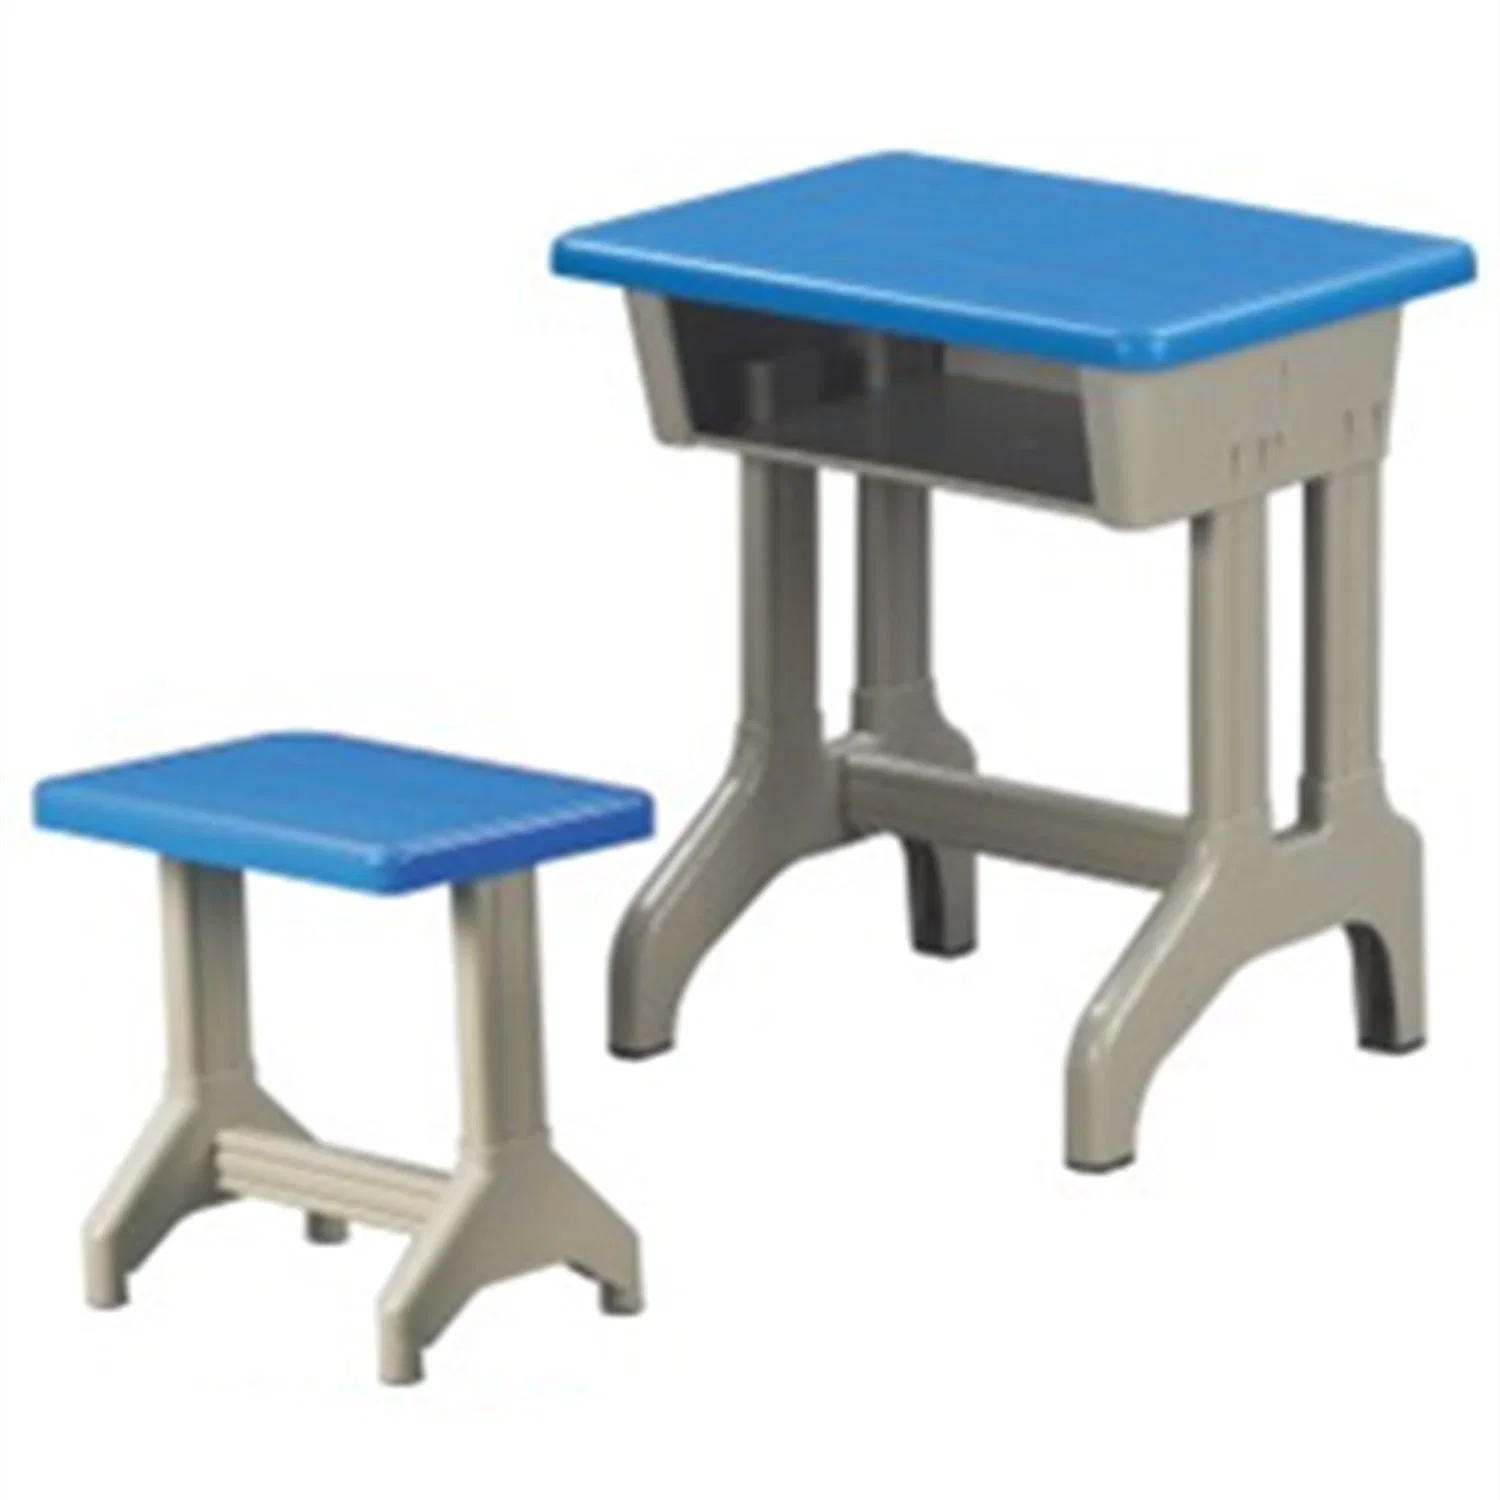 Vorschule Kunststoff Stahl Tische und Stühle Schule Kinder pädagogische Versorgungsmaterialien